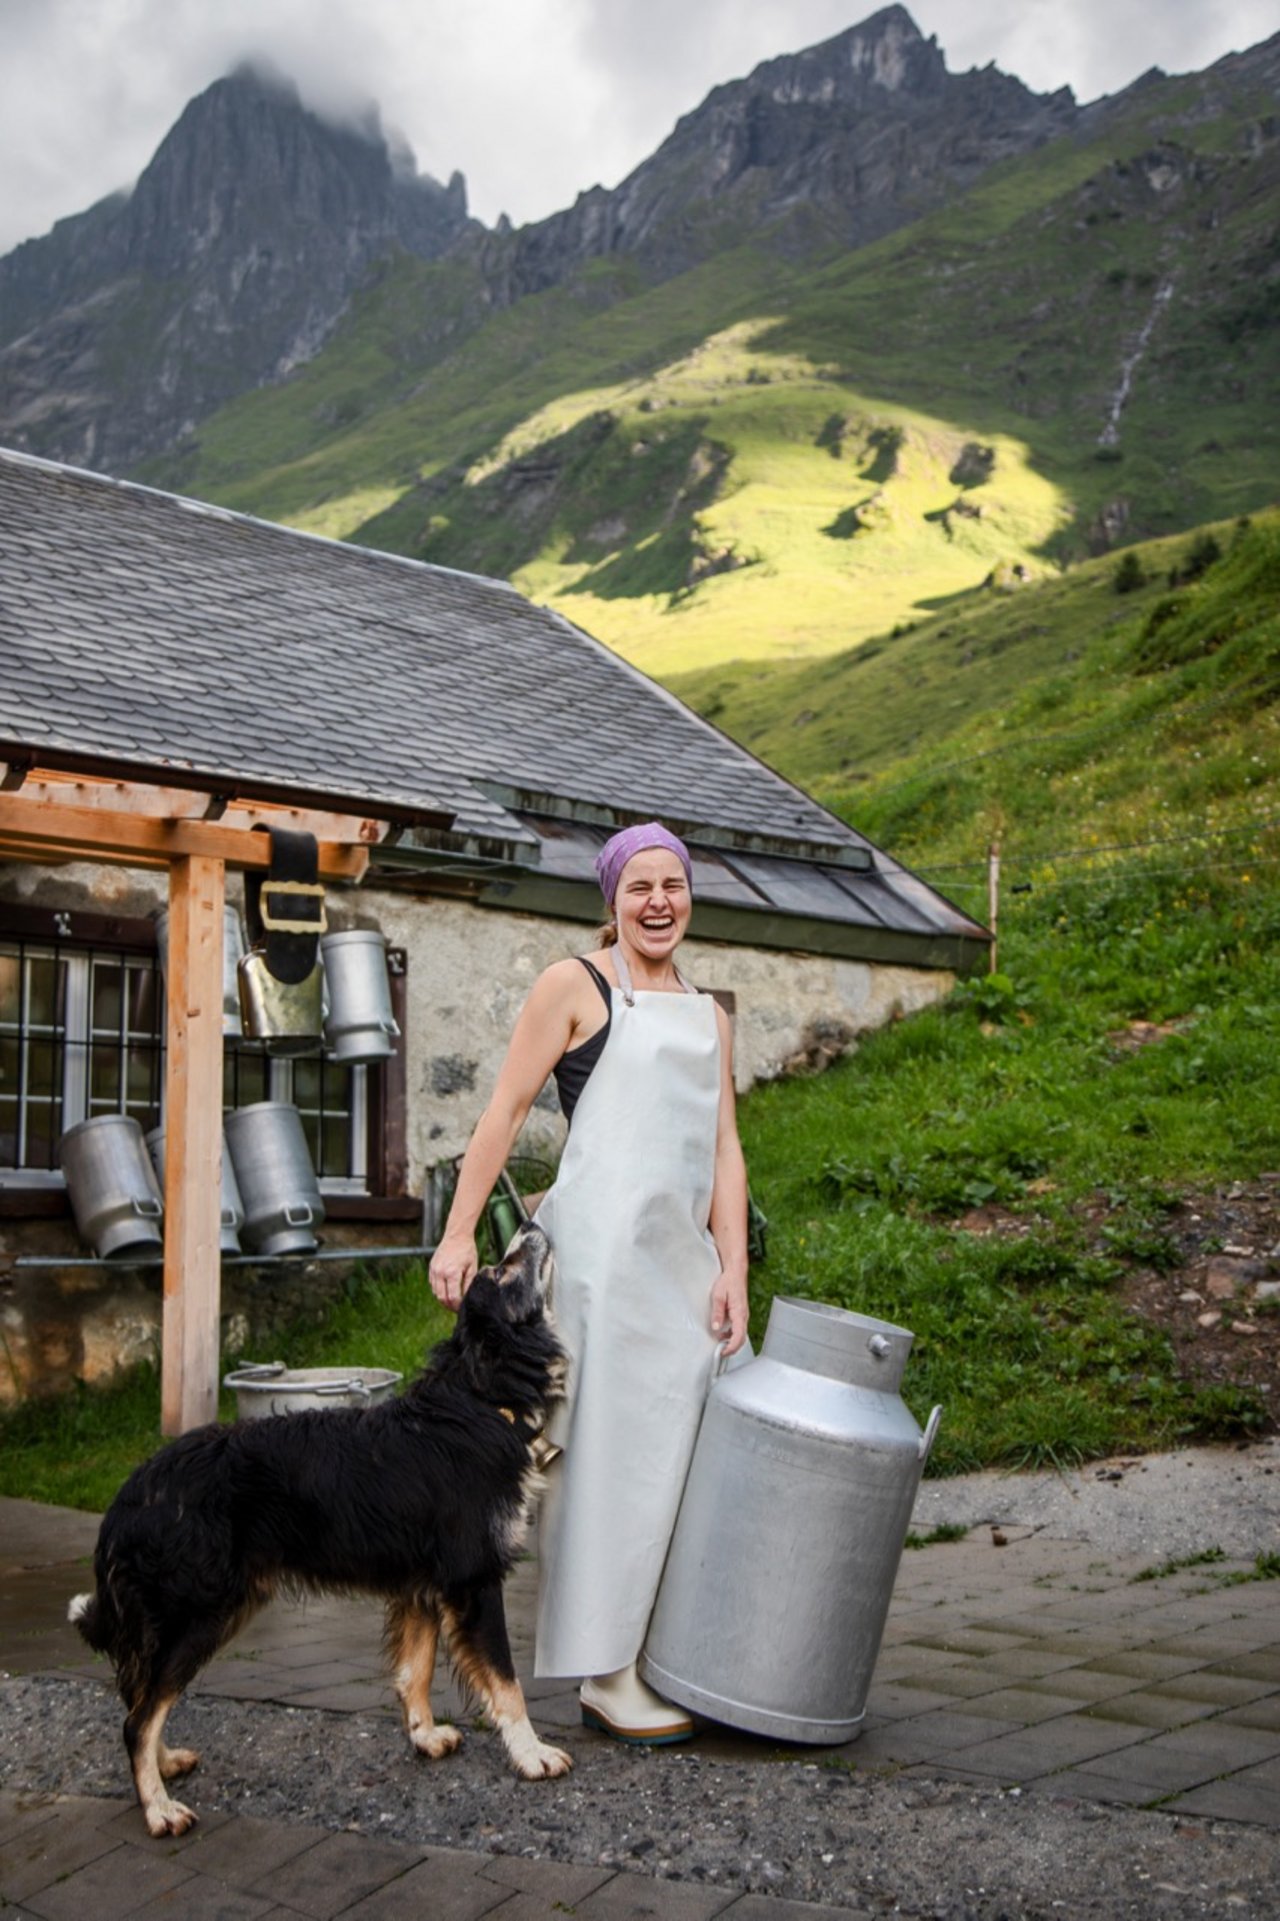 Rita Widmer ist stolz, mit ihrer Familie die Glarner Alp Bösbächi zu bewirtschaften. Nächstes Jahr übernehmen sie noch den Hof von Rita Widmers Eltern. Bild: Pia Neuenschwander